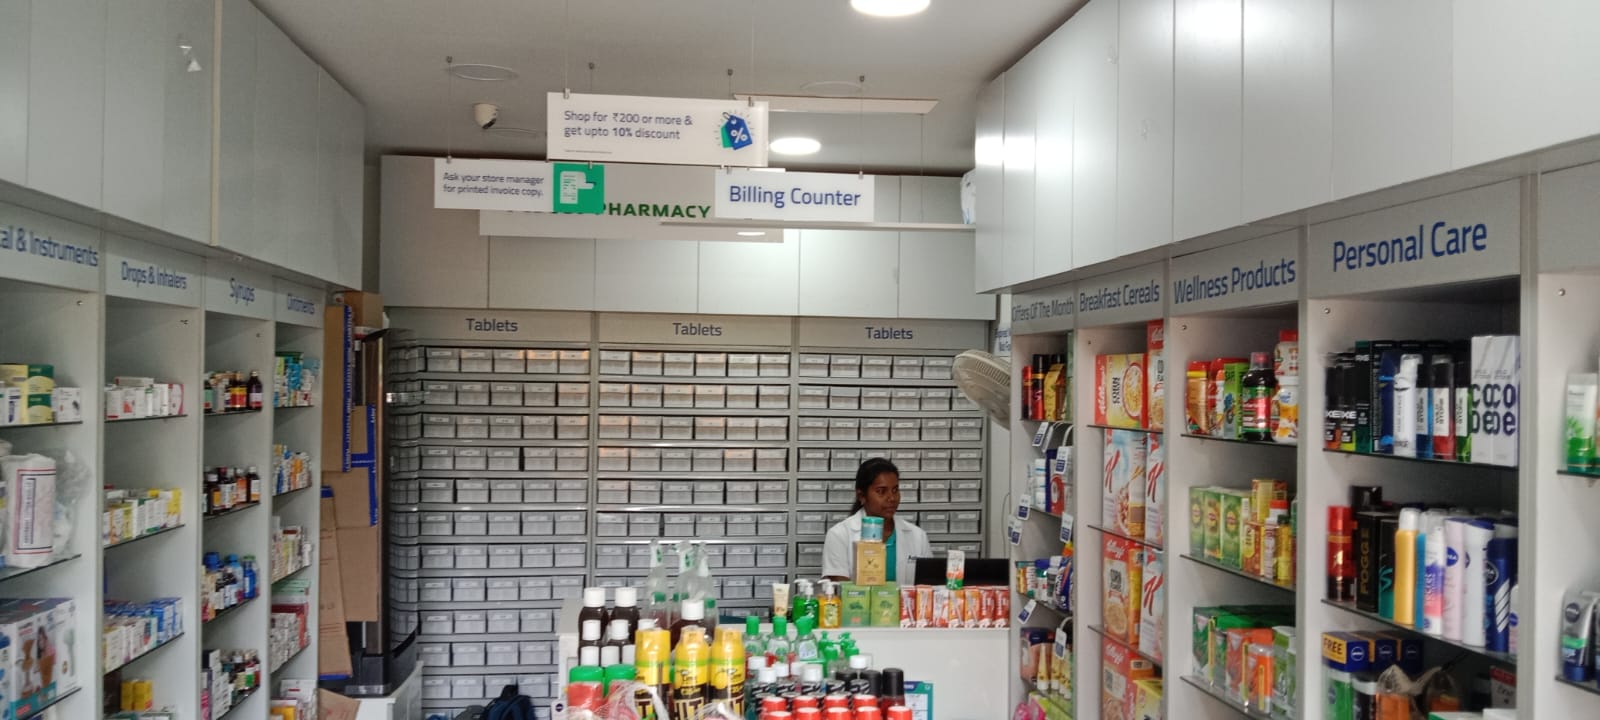 Aster Pharmacy in Doddanagamangala, Bangalore